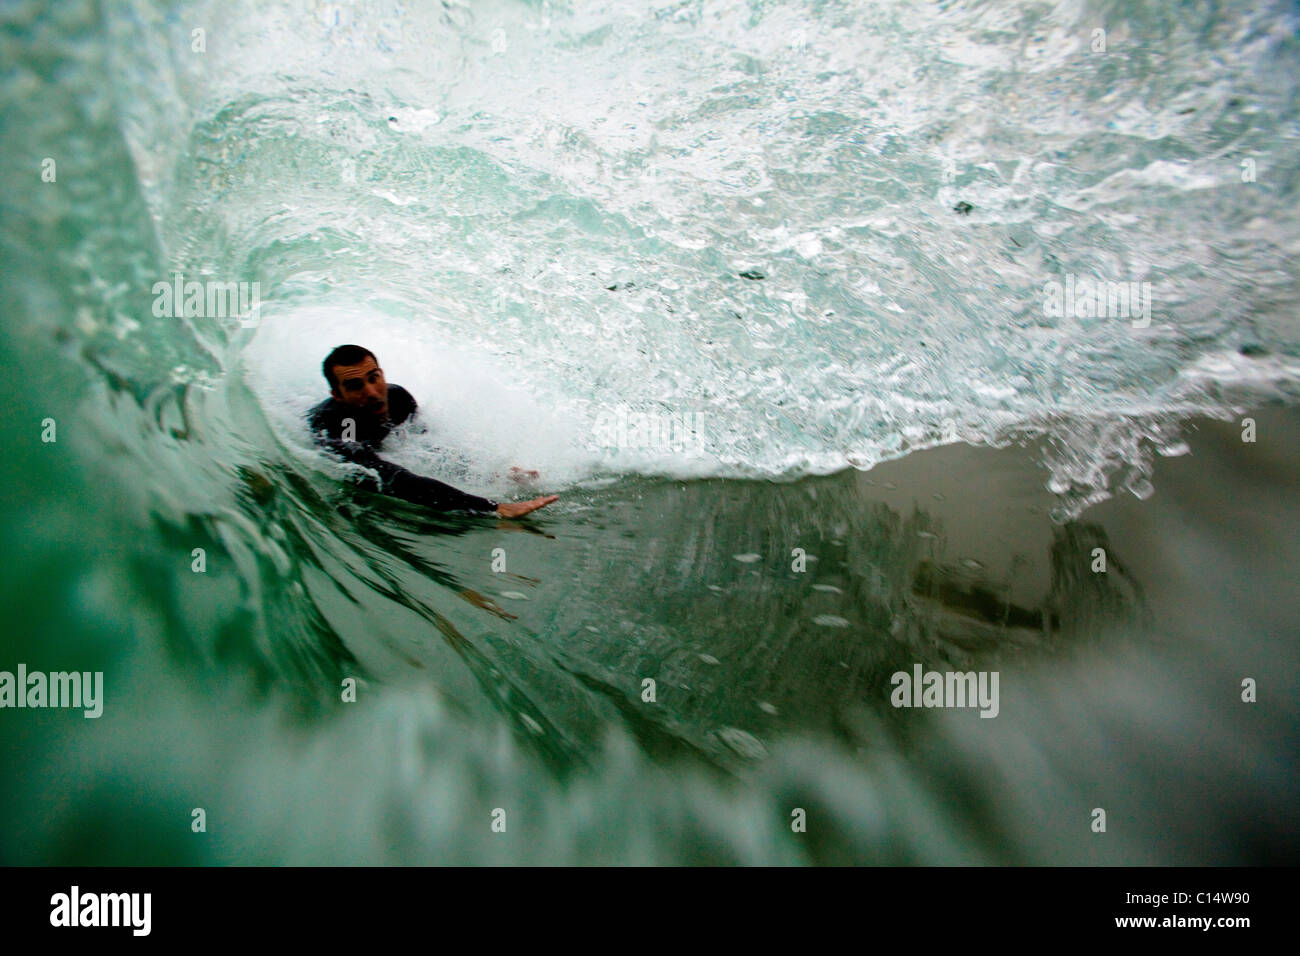 A male bodysurfer gets barreled while bodysurfing at Zuma beach in Malibu, California. Stock Photo